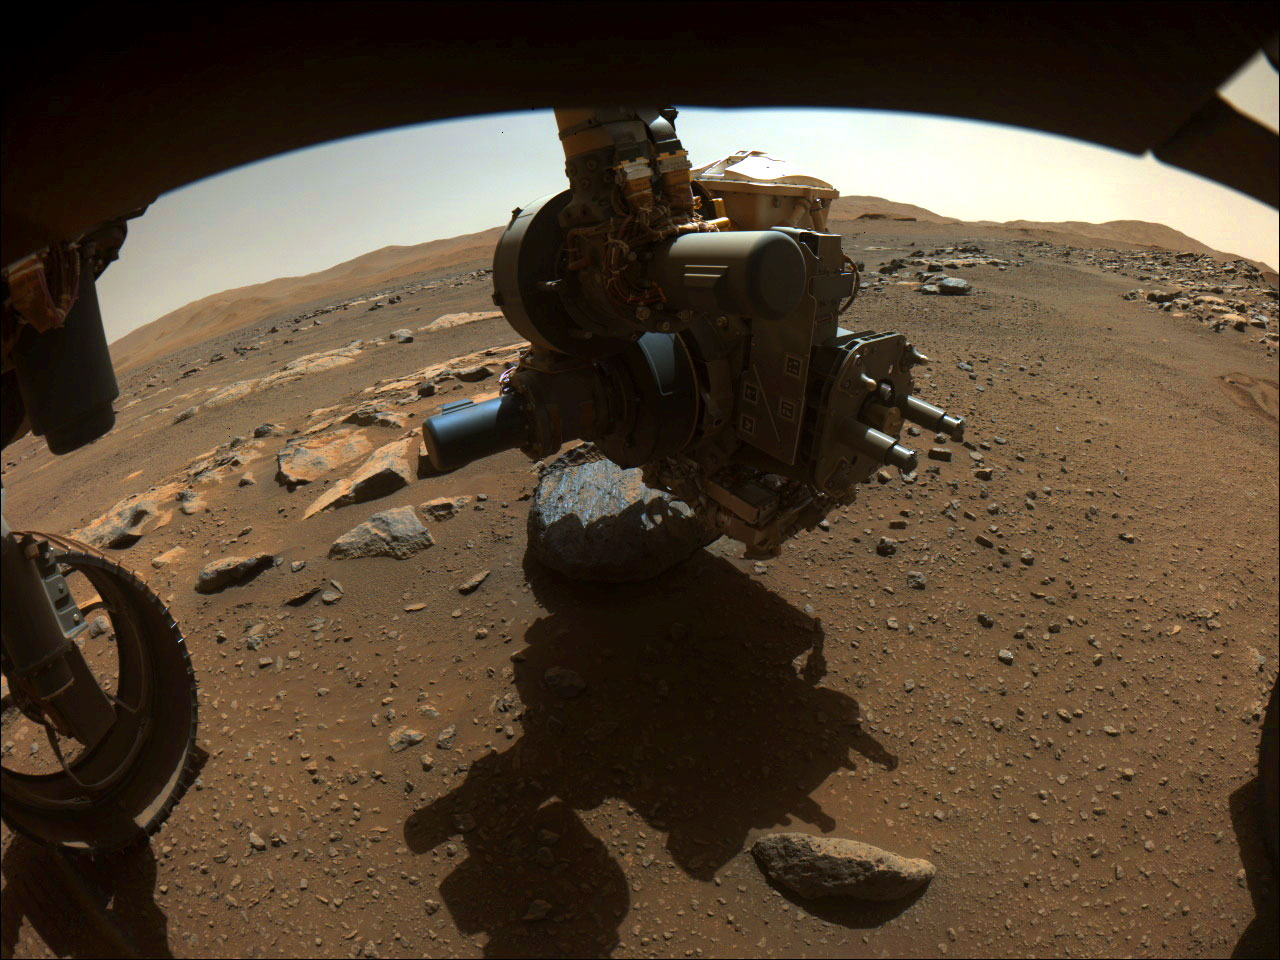 La NASA estudia cómo limpiar unos escombros en el Perseverance de Marte